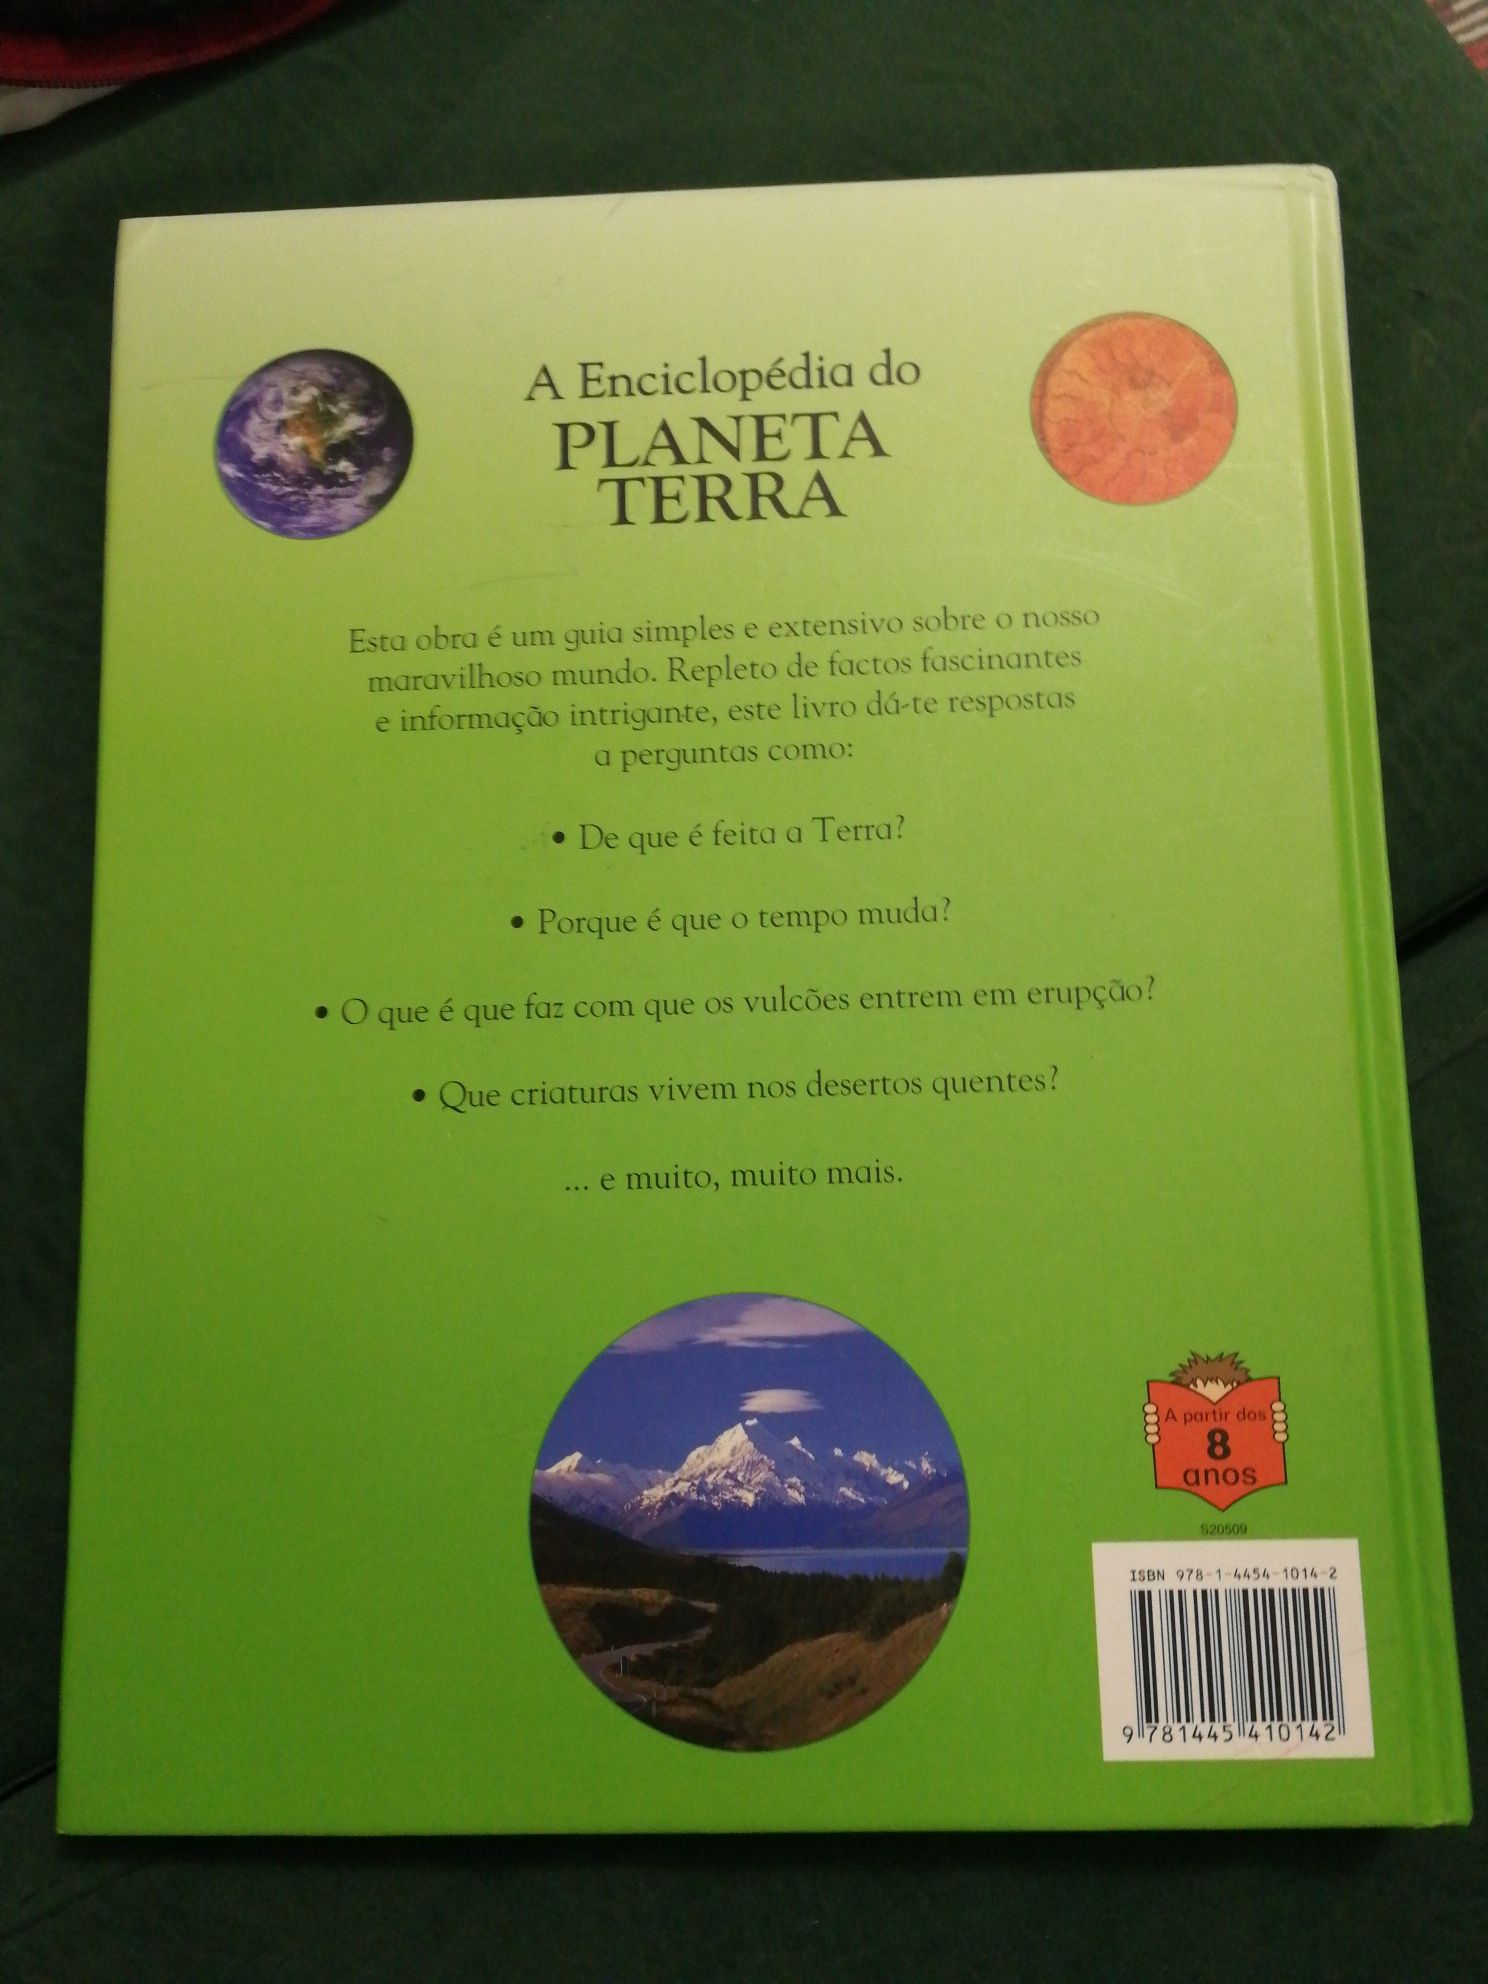 "A Enciclopédia do Planeta Terra"